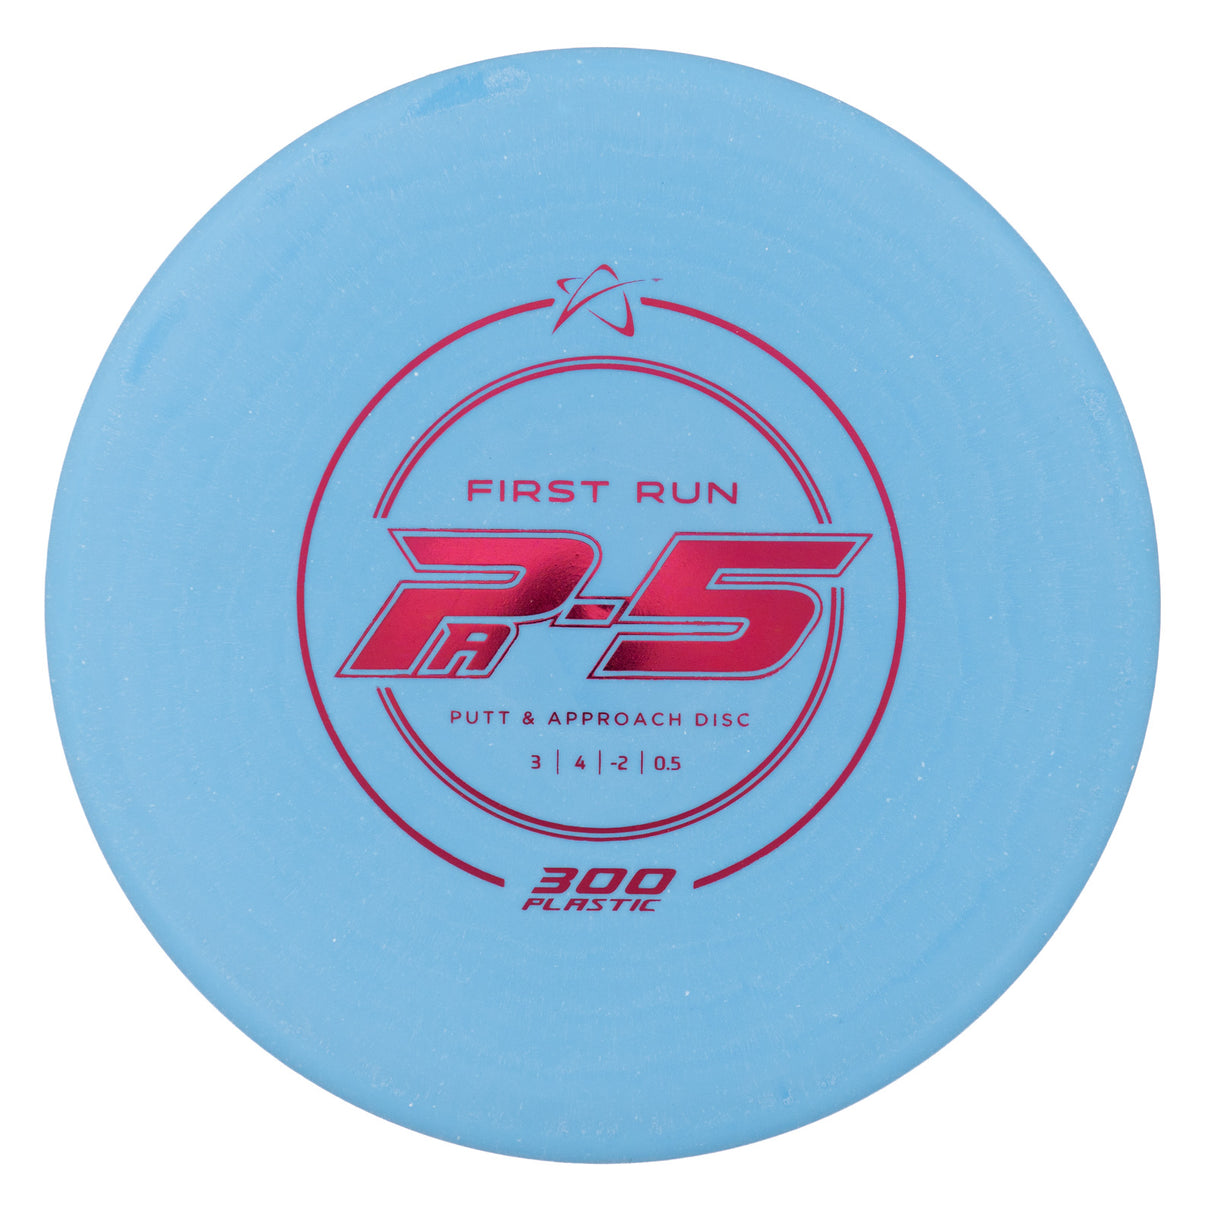 Prodigy PA-5 - First Run 300 178g | Style 0001